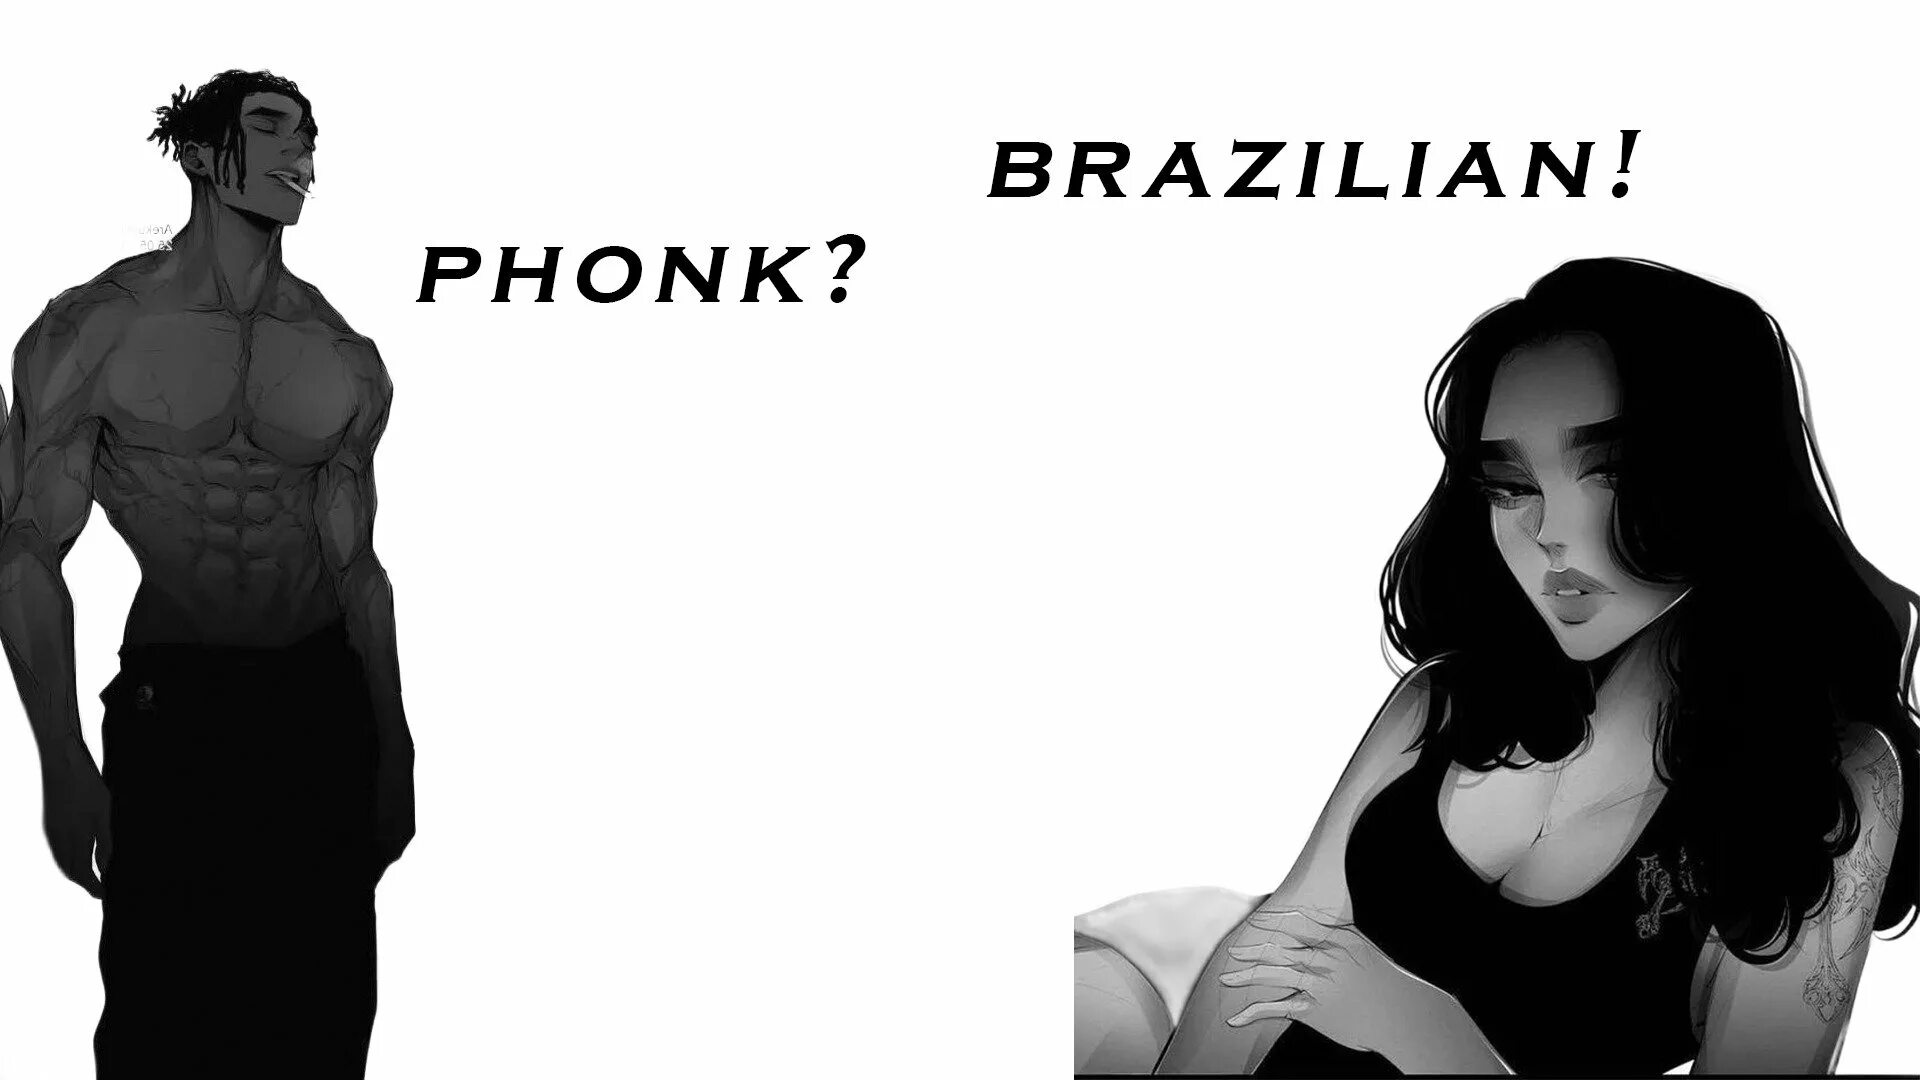 Life in brazilian phonk. Brazilian ФОНК. Бразилиан ФОНК ава. Бразильский фанк авы. ФОНК авы.